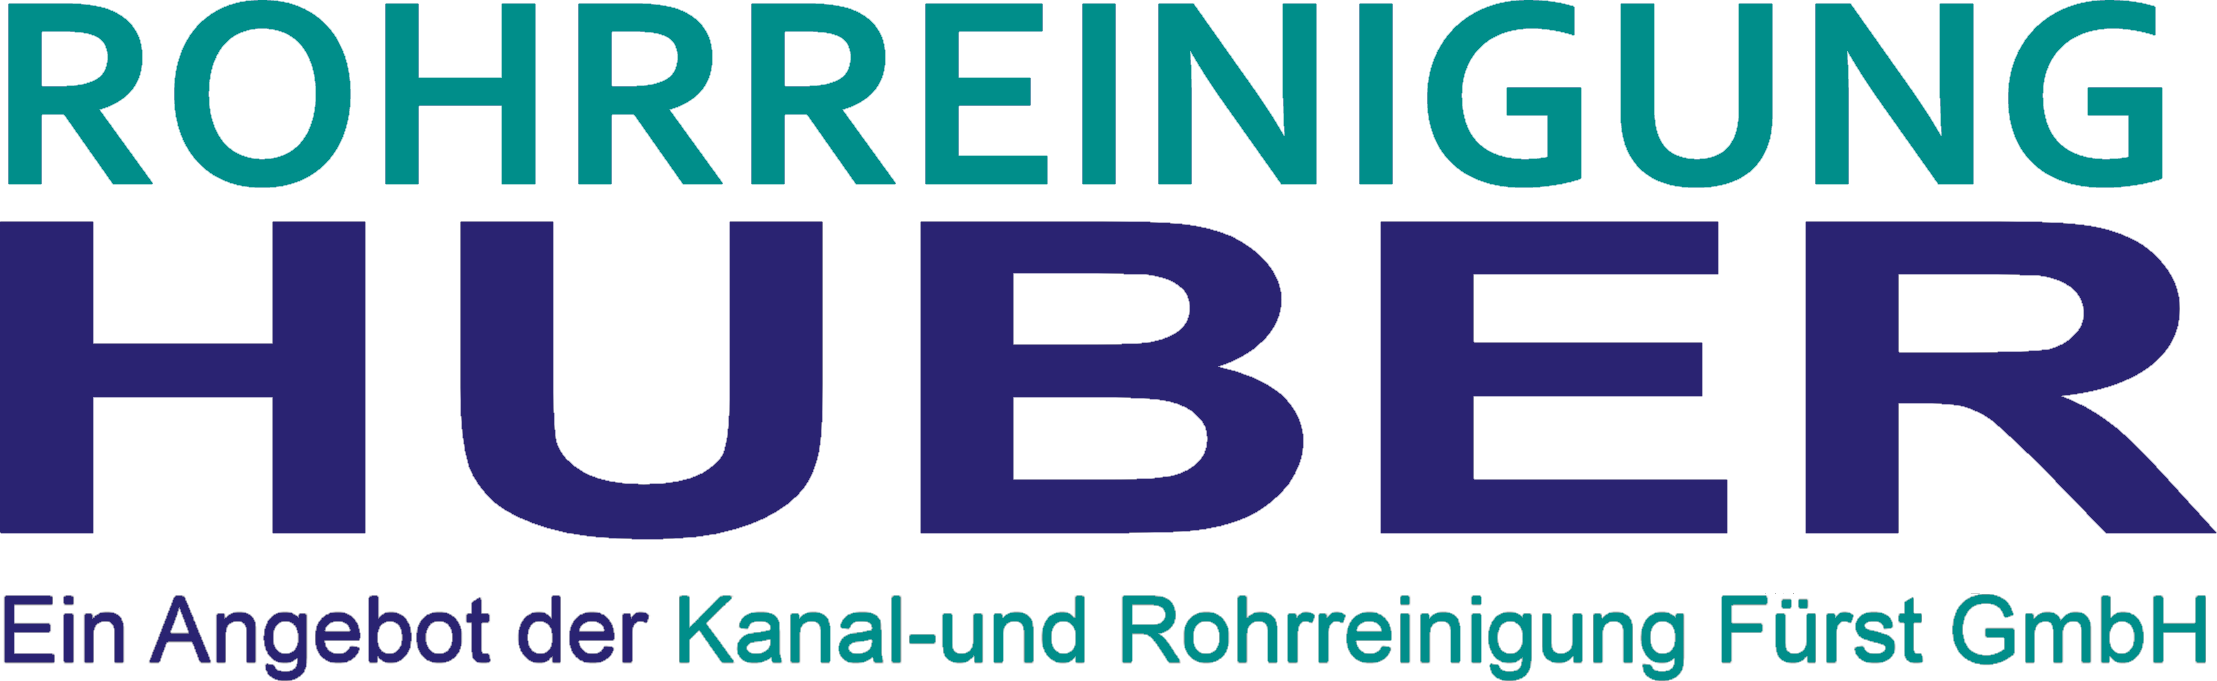 Rohrreinigung Huber - Rohrreinigung für Jettenbach